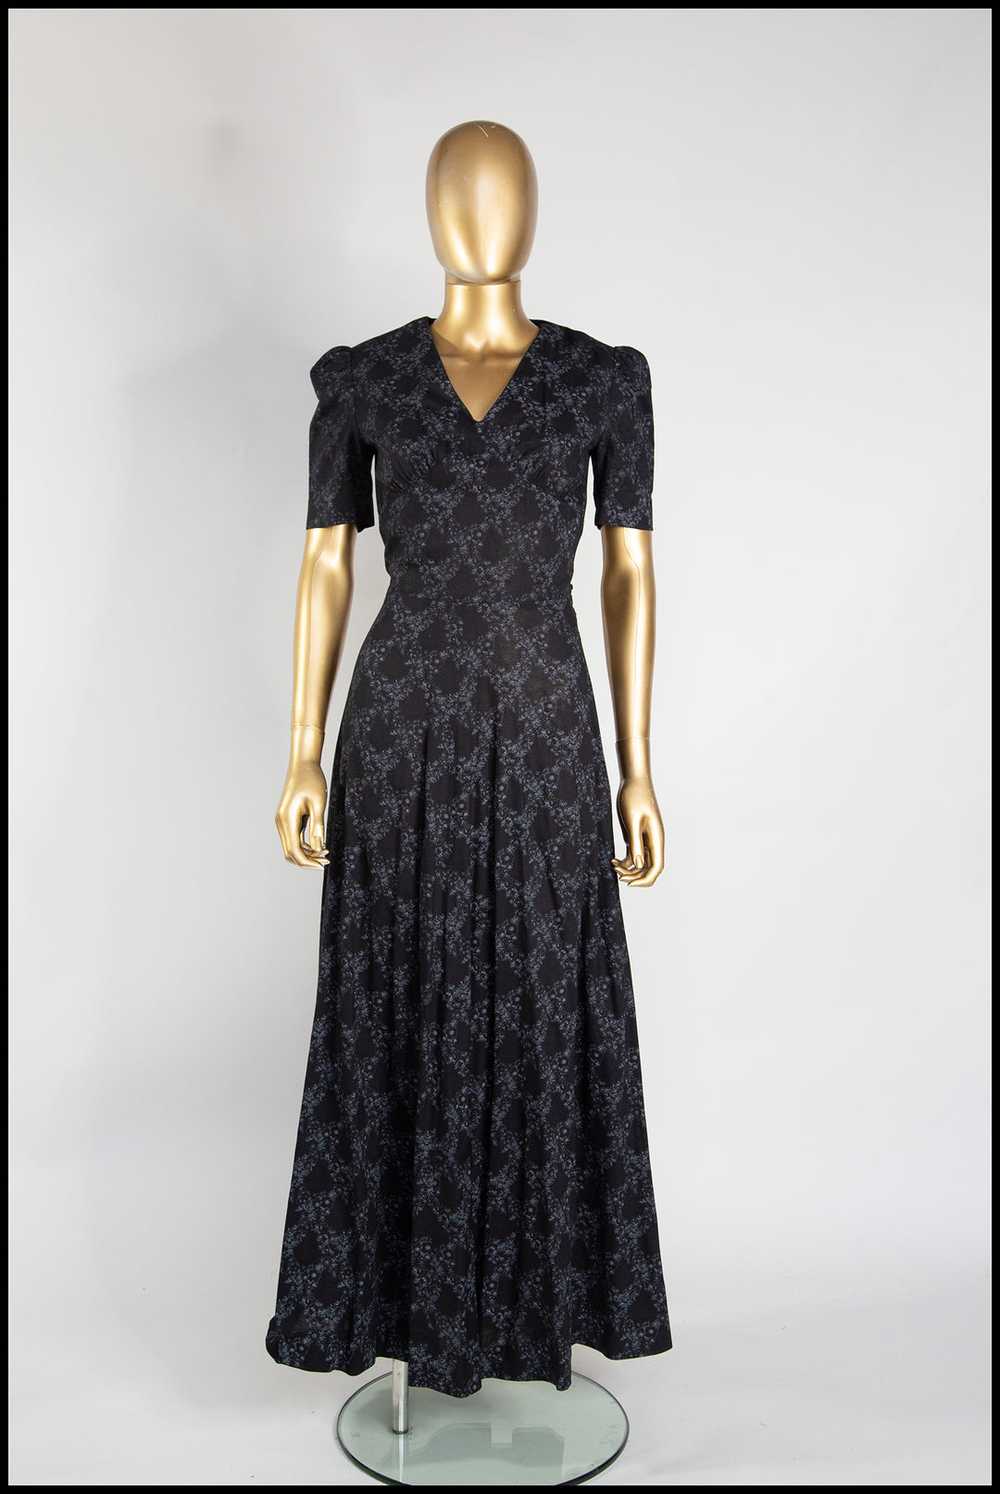 Vintage 1970s Black Floral Cotton Maxi Dress - image 1